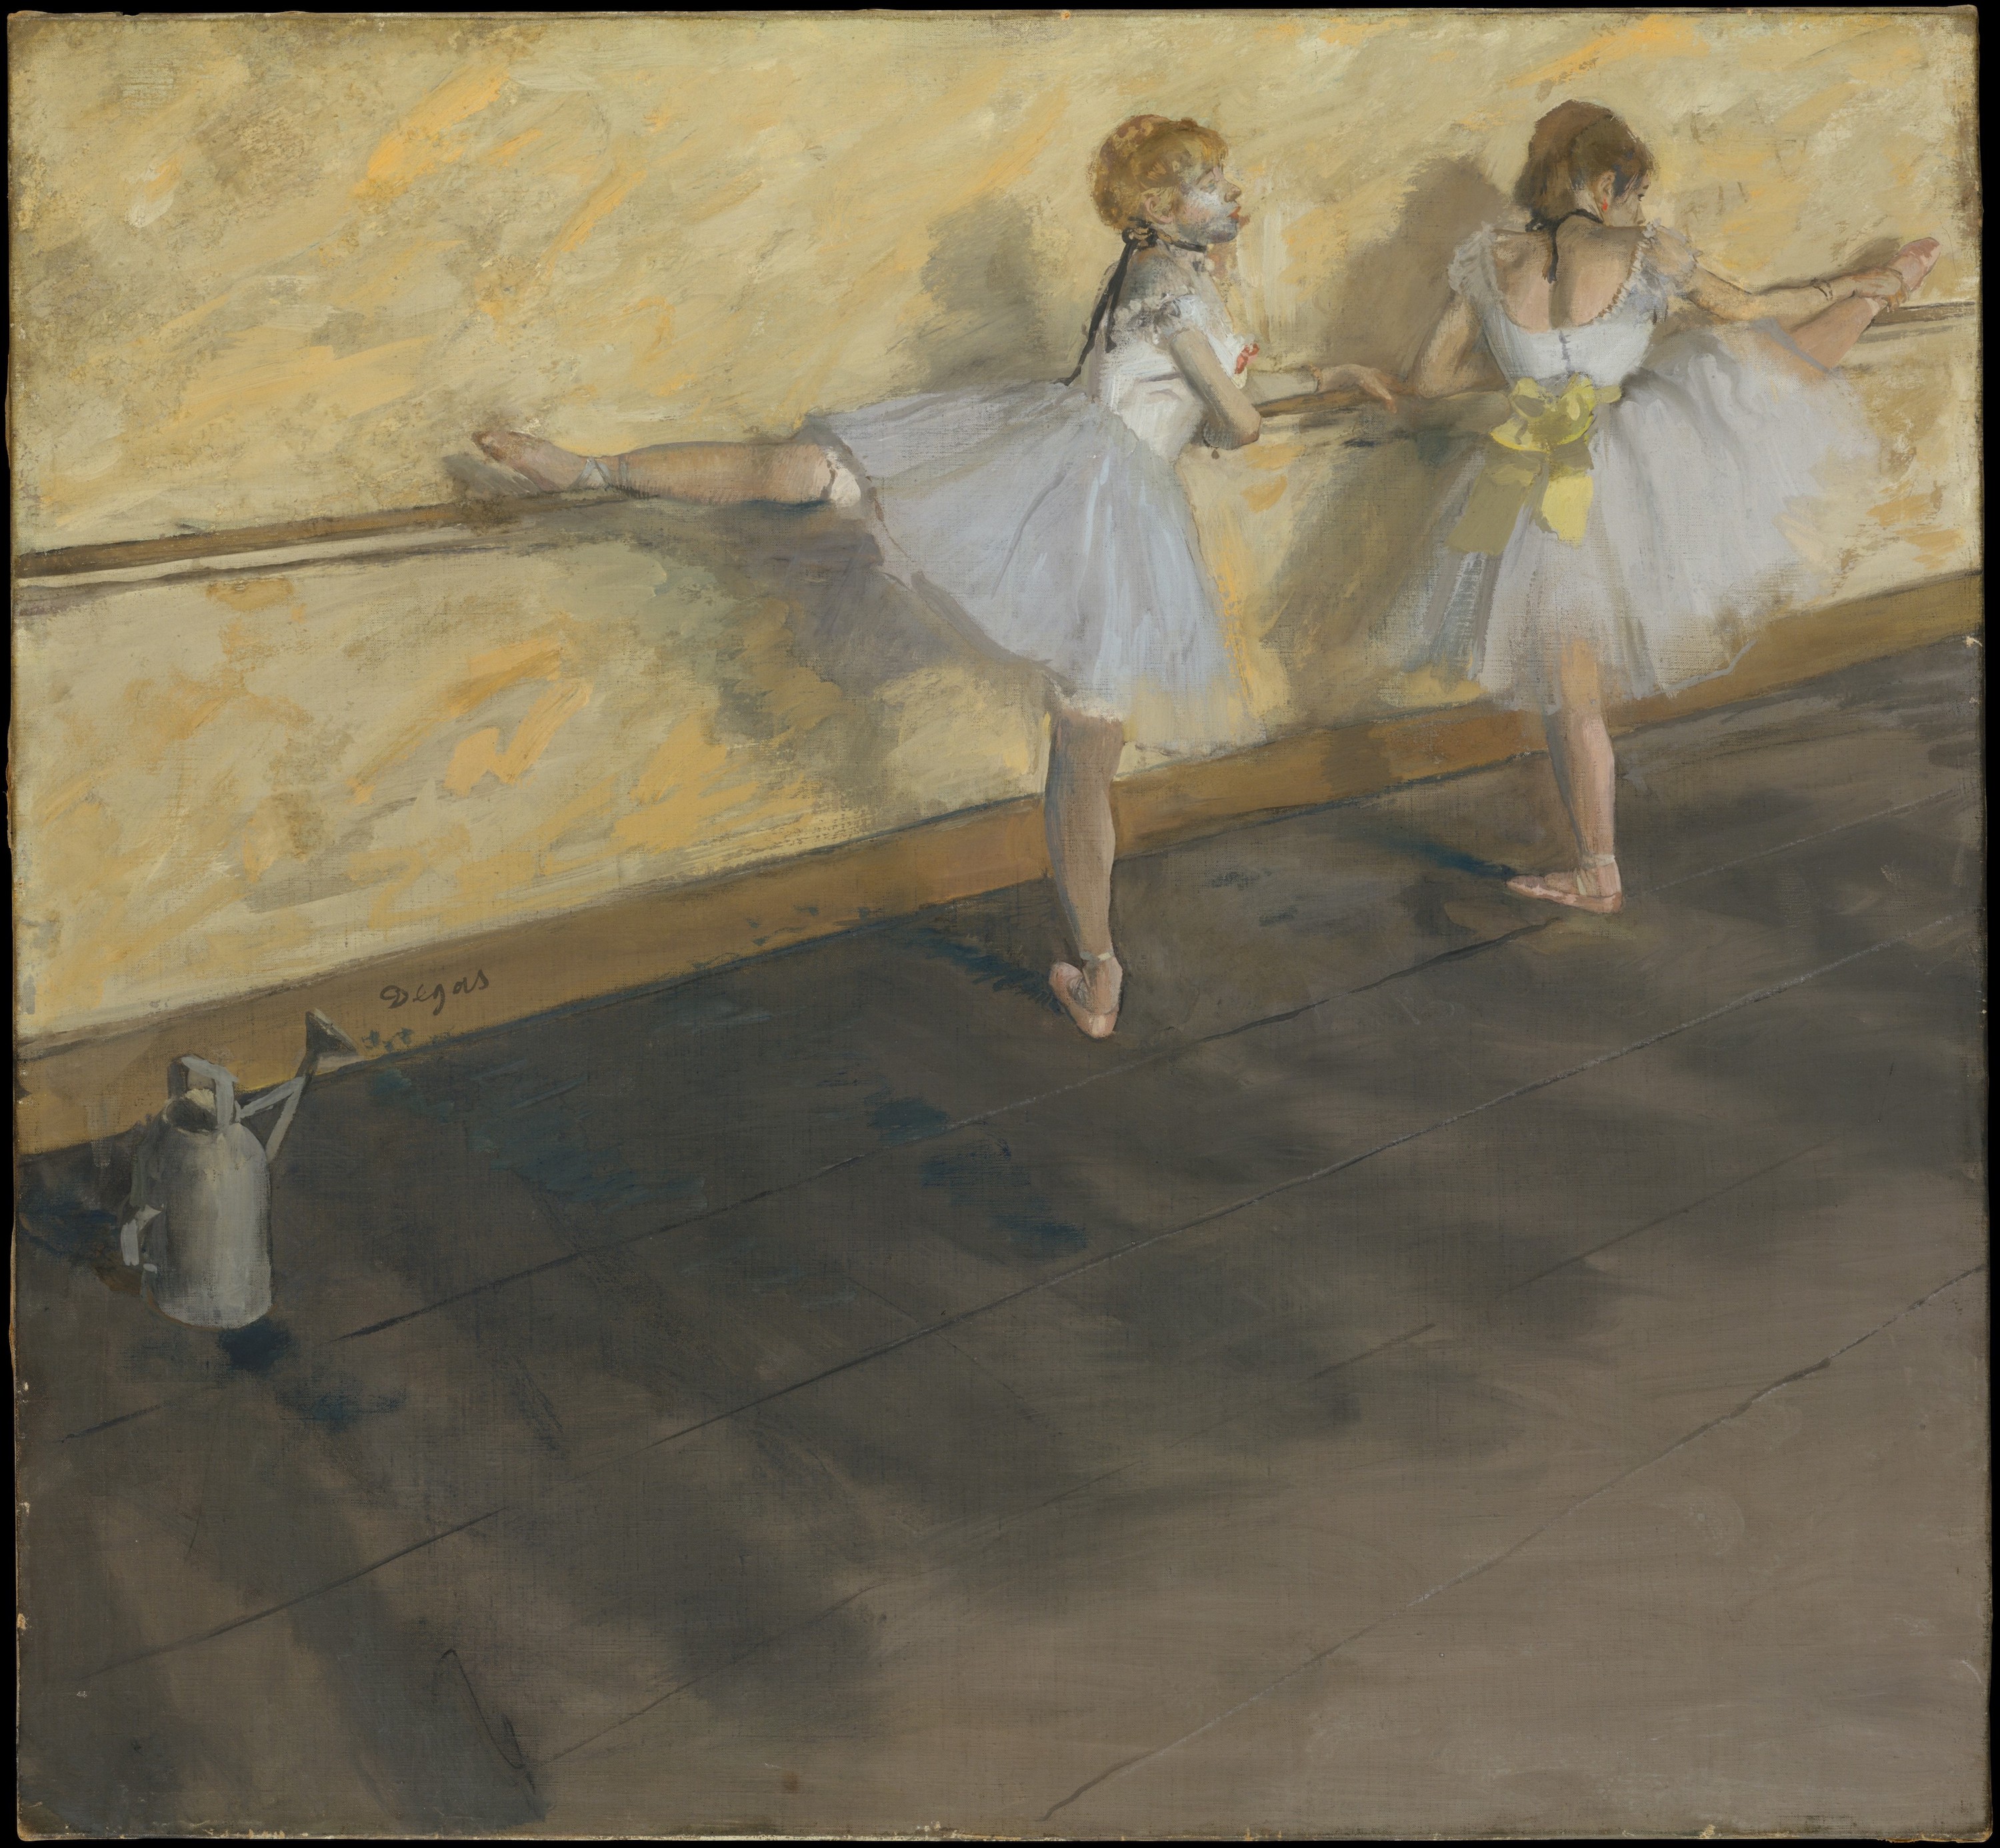 Danseuses à la barre by Edgar Degas - 1877 - 75.6 x 81.3 cm Metropolitan Museum of Art